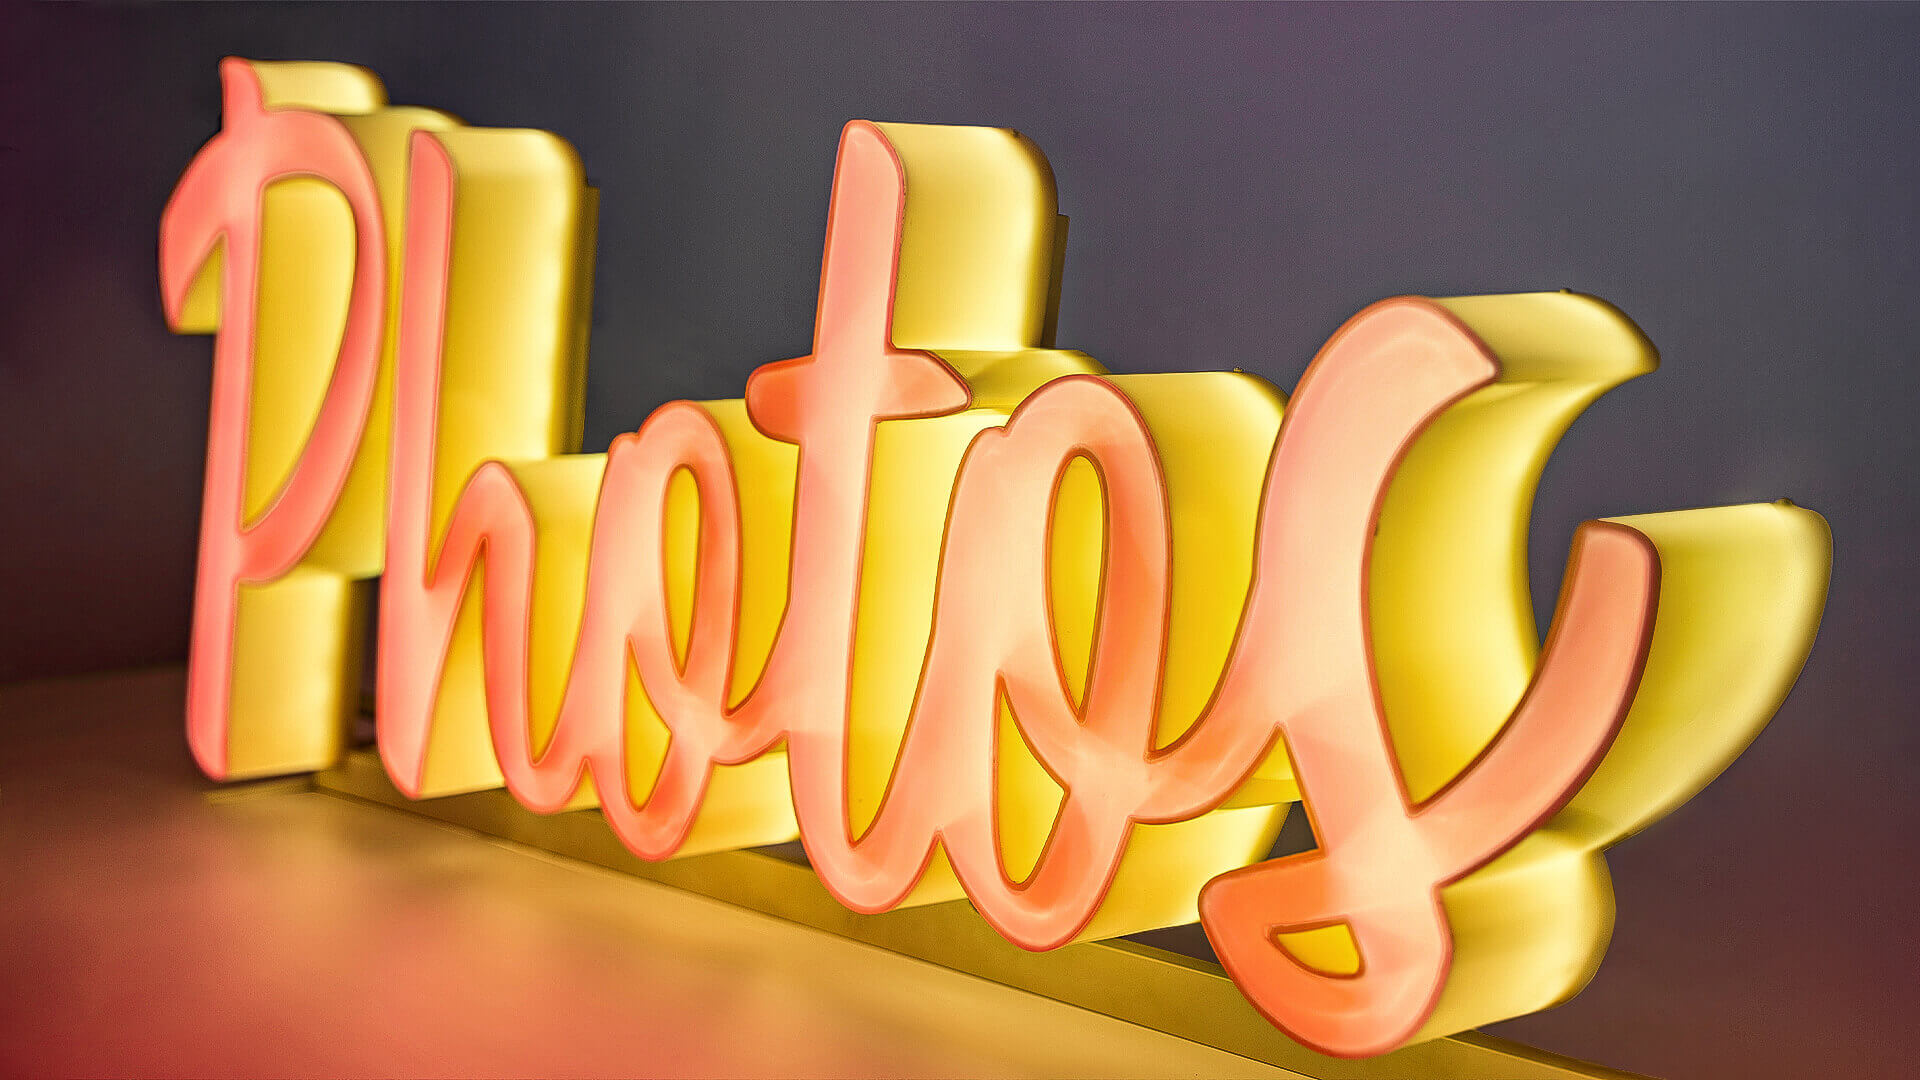 Photos - Letras de plexiglás brillantes en el anverso y el lateral, en color naranja.